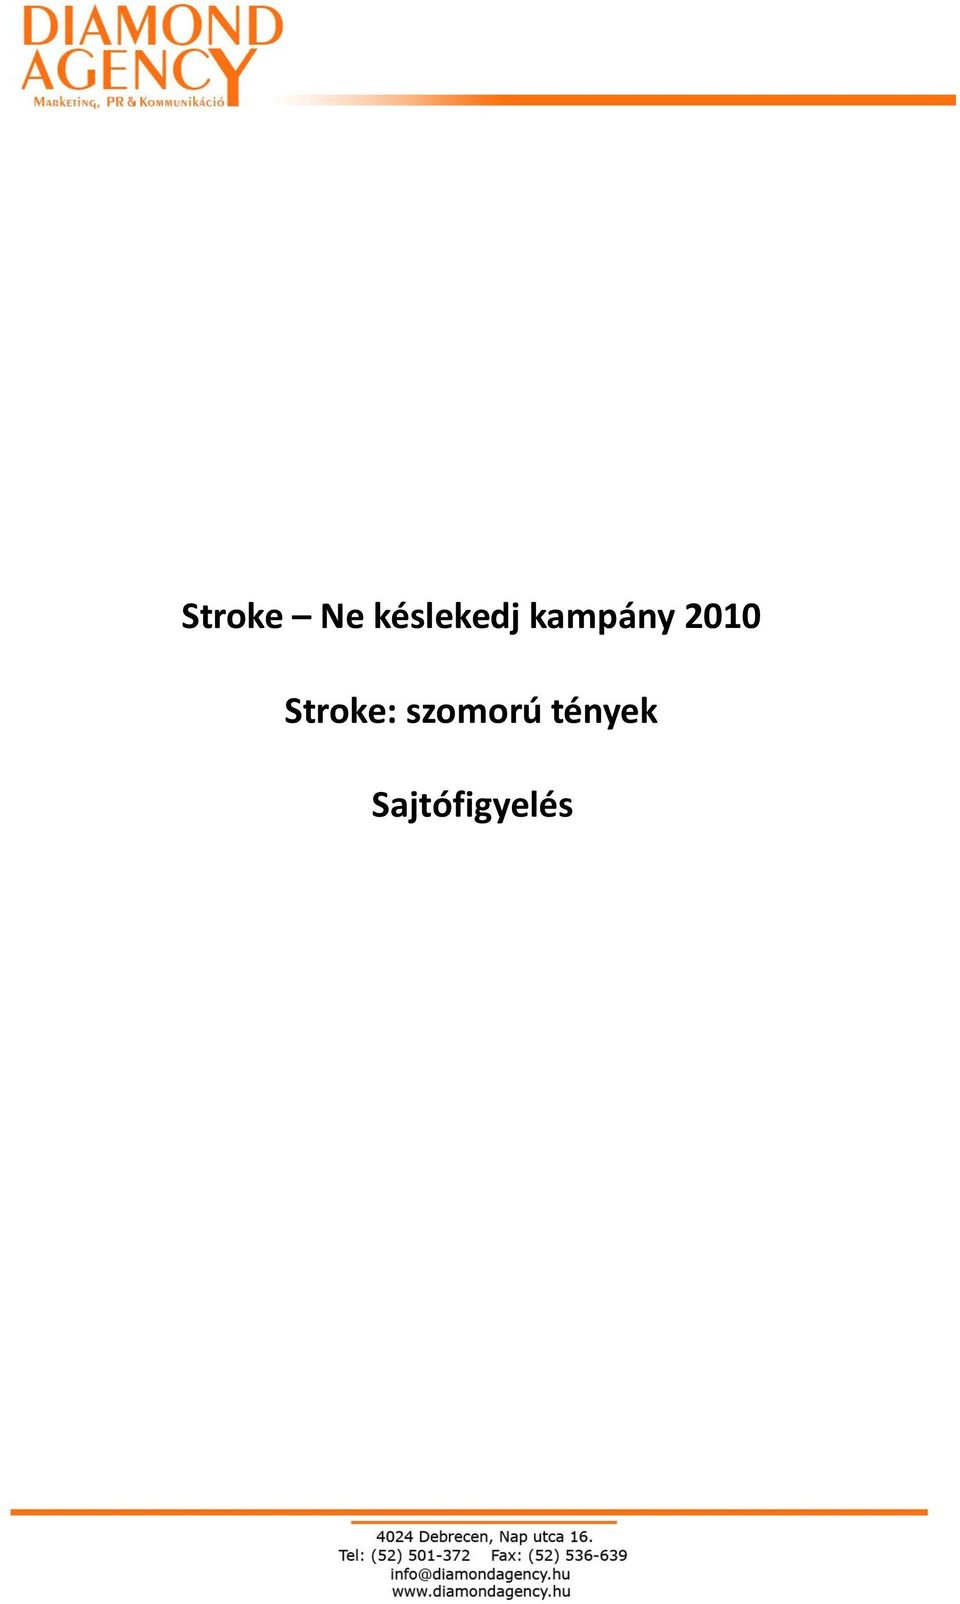 2010 Stroke: